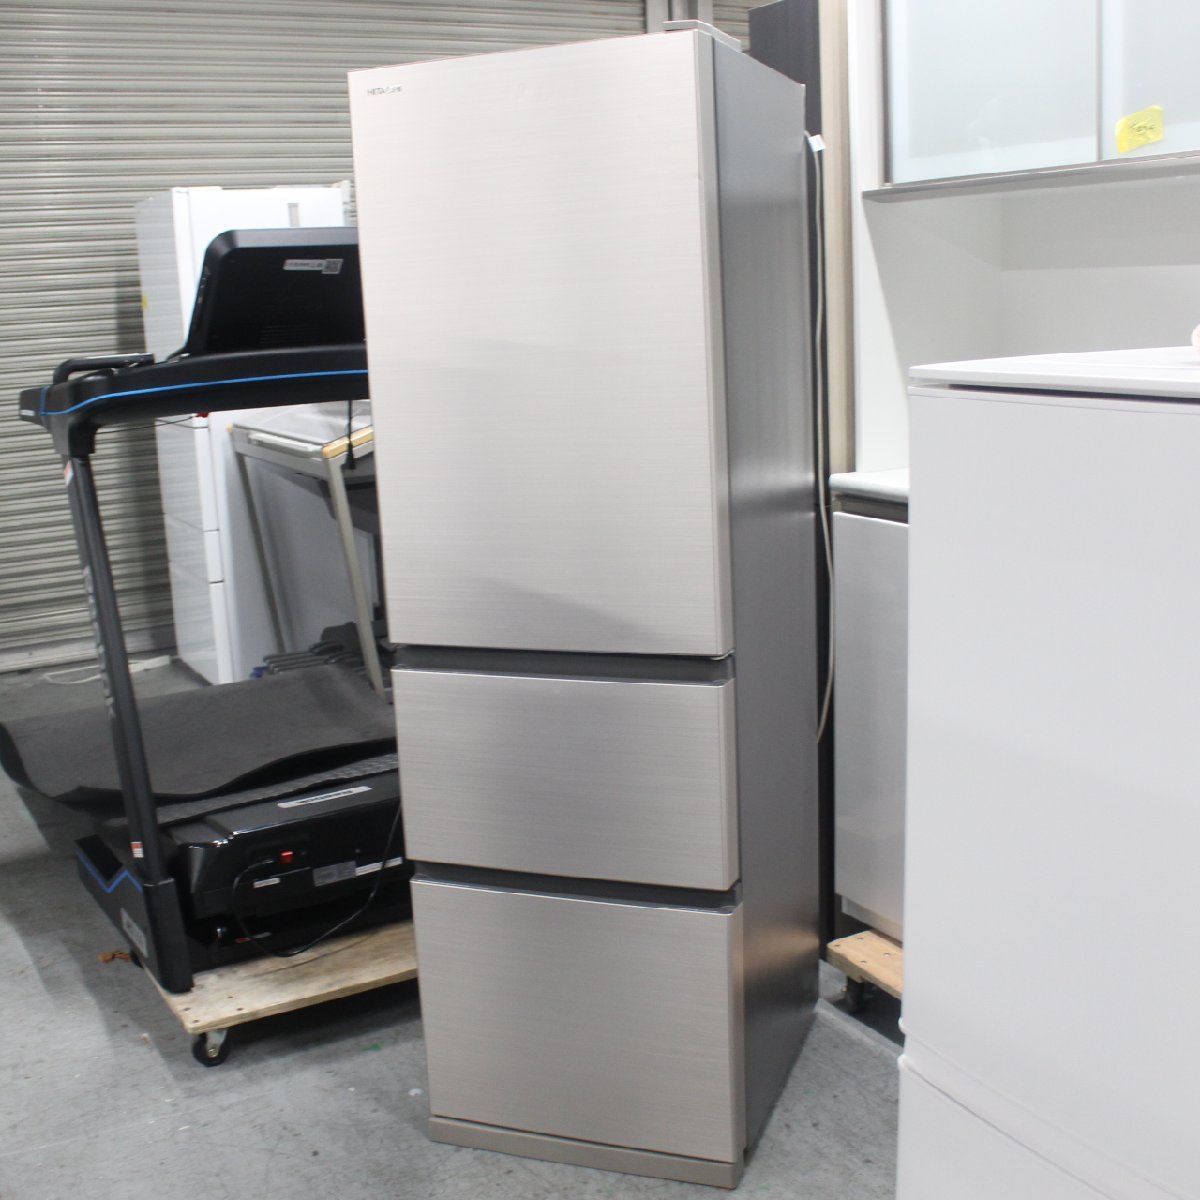 東京都豊島区にて 日立 冷凍冷蔵庫 R-V32NV 2021年製 を出張買取させて頂きました。